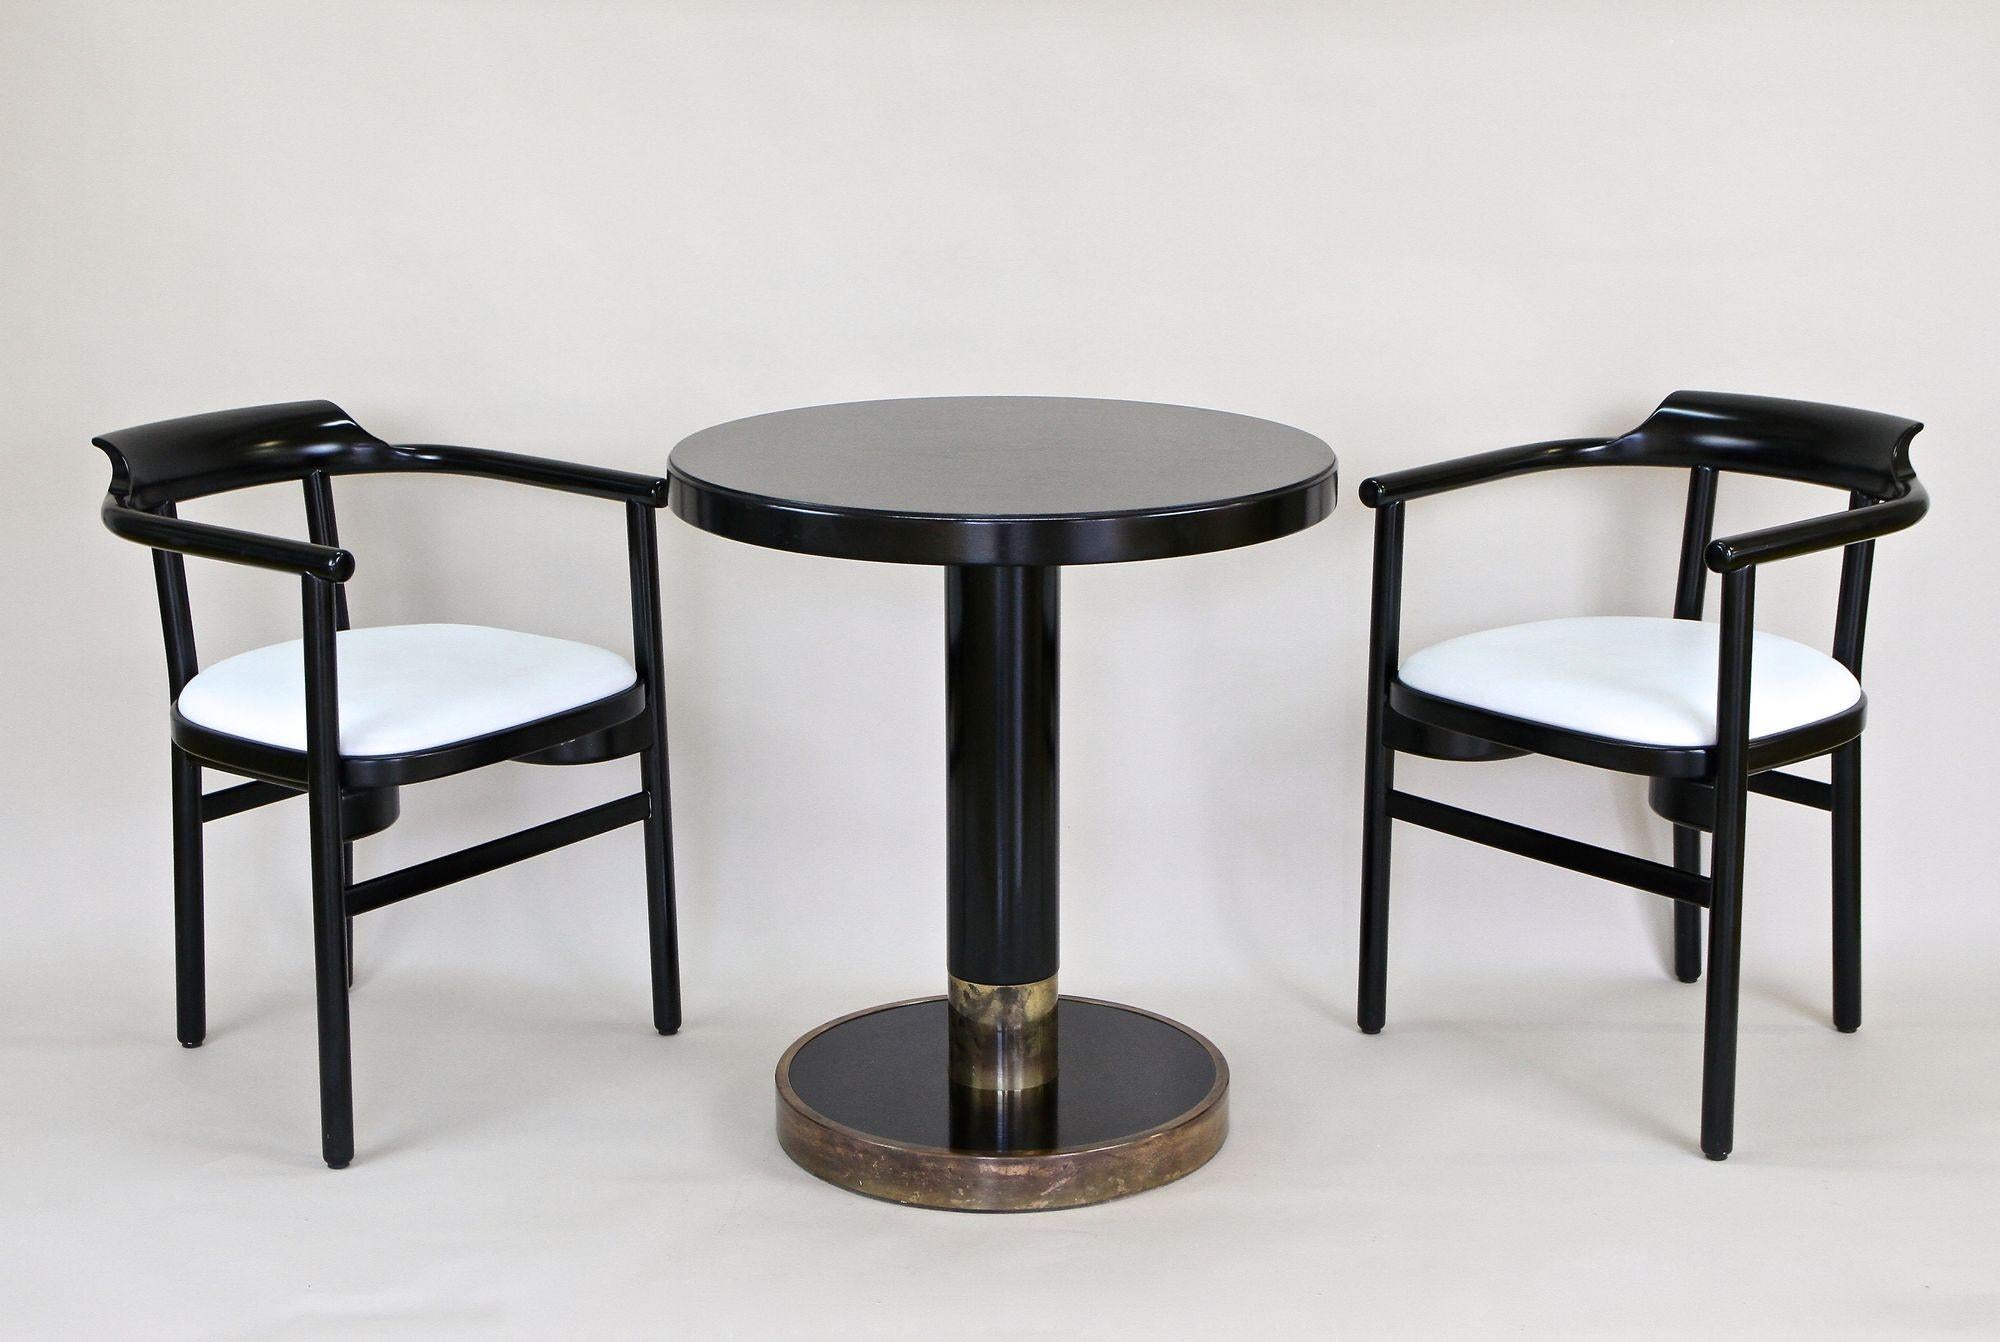 Table basse ronde noire intemporelle de la fin du 20e siècle fabriquée par la célèbre société Thonet Vienna en Autriche. Attribuée au design de l'époque passée - la période Art Nouveau - cette fine table en bois de hêtre datant d'environ 1980 est